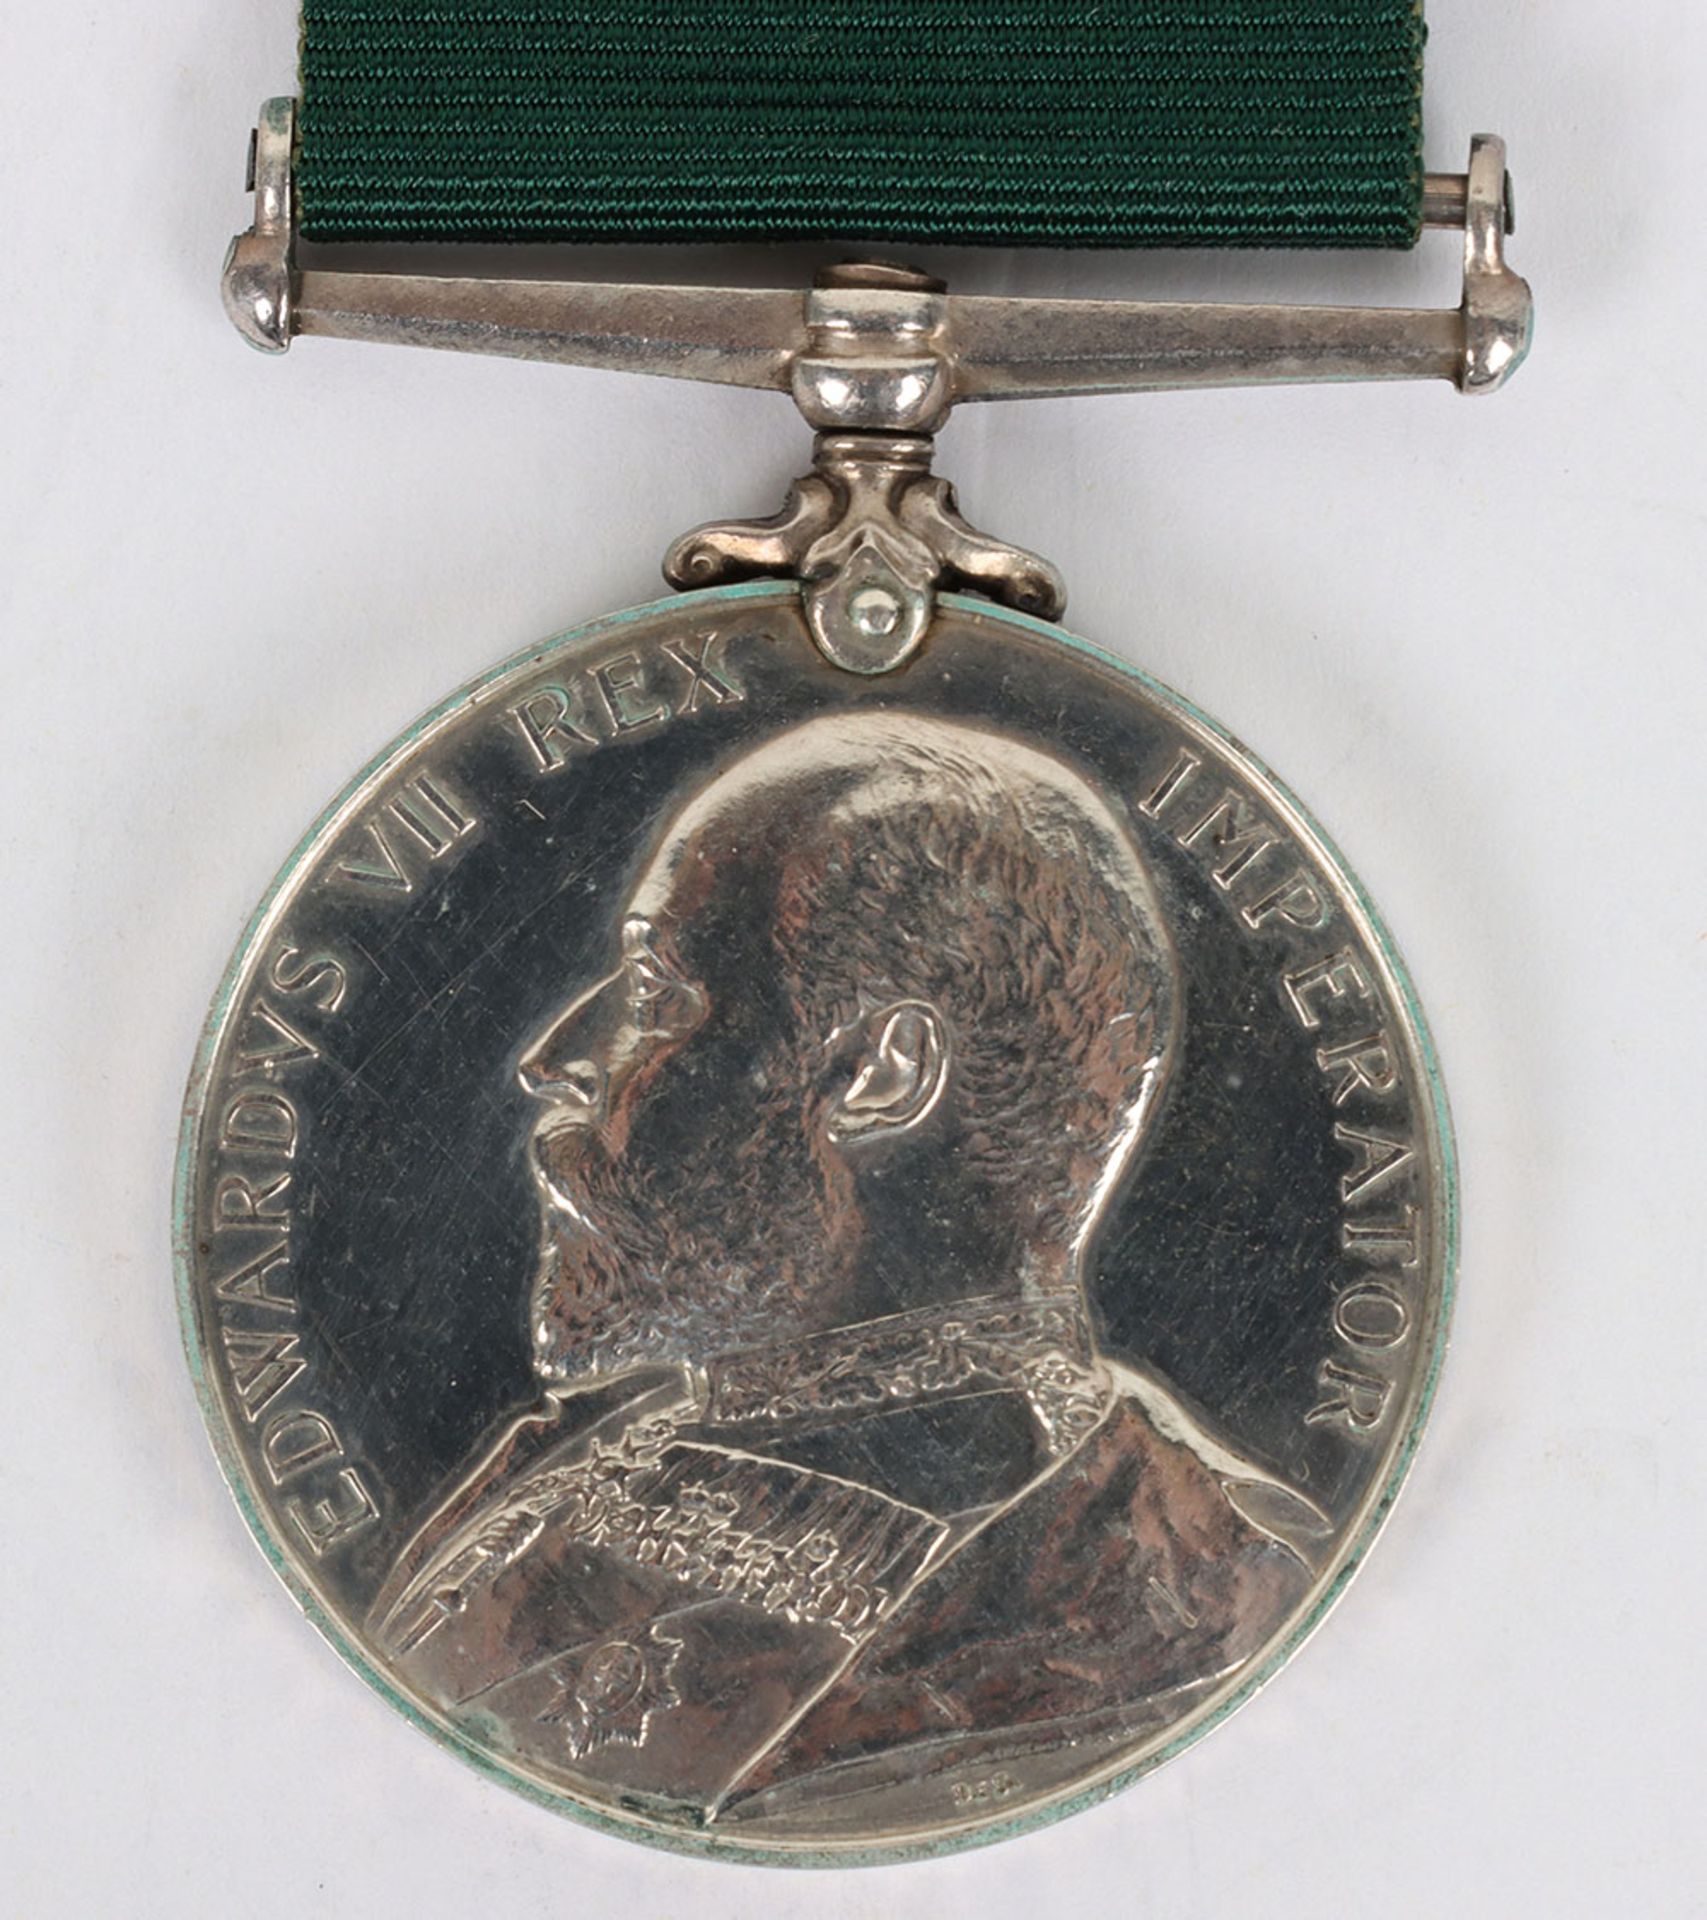 Edwardian Volunteer Long Service Medal to the 1st Volunteer Battalion Northamptonshire Regiment - Image 2 of 5